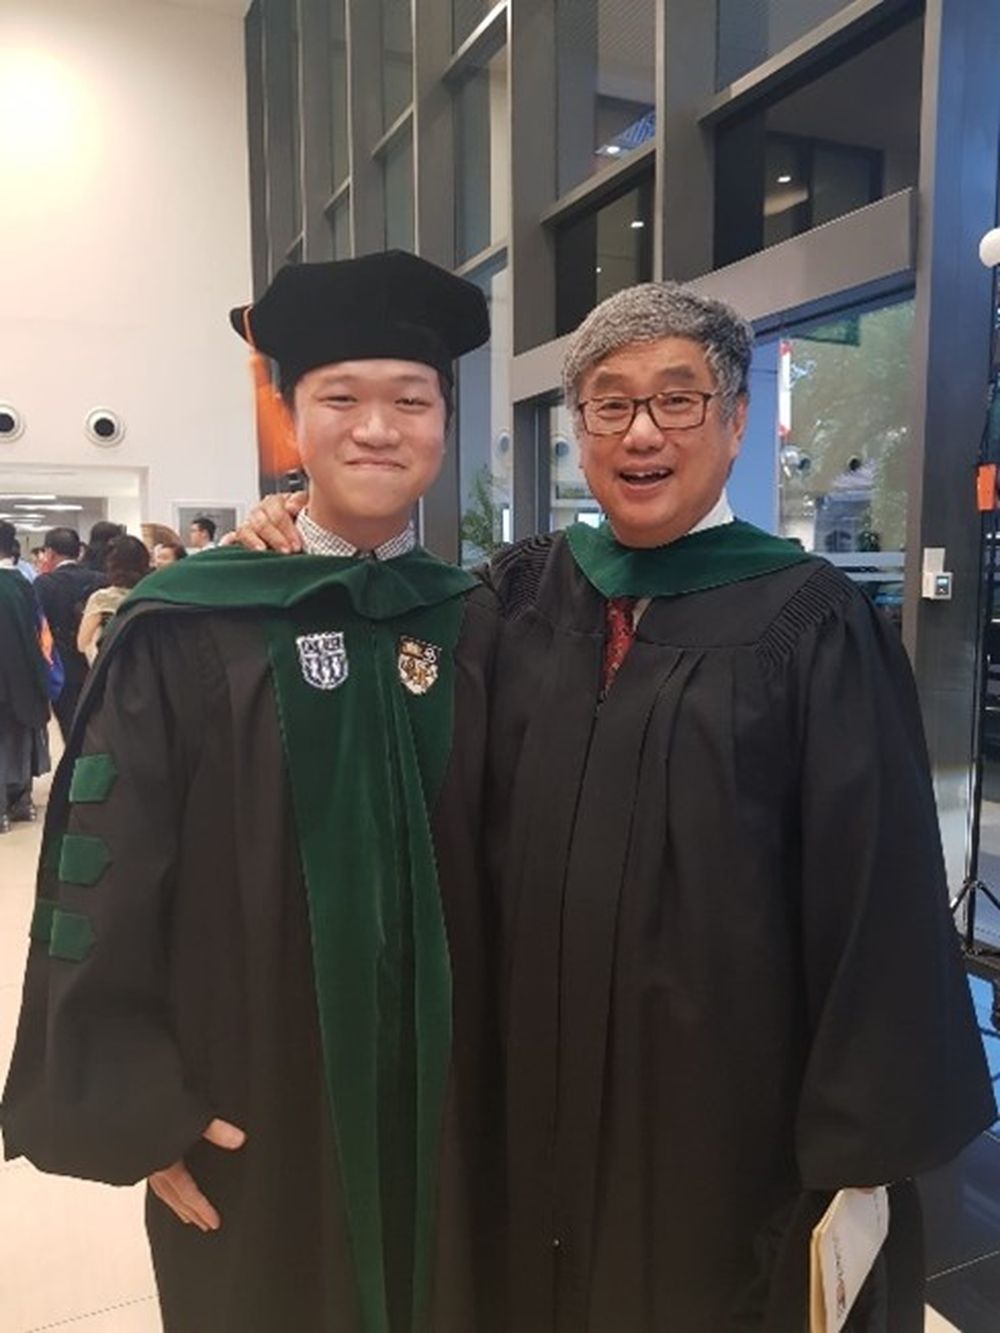 Danny Tng at his graduation ceremony